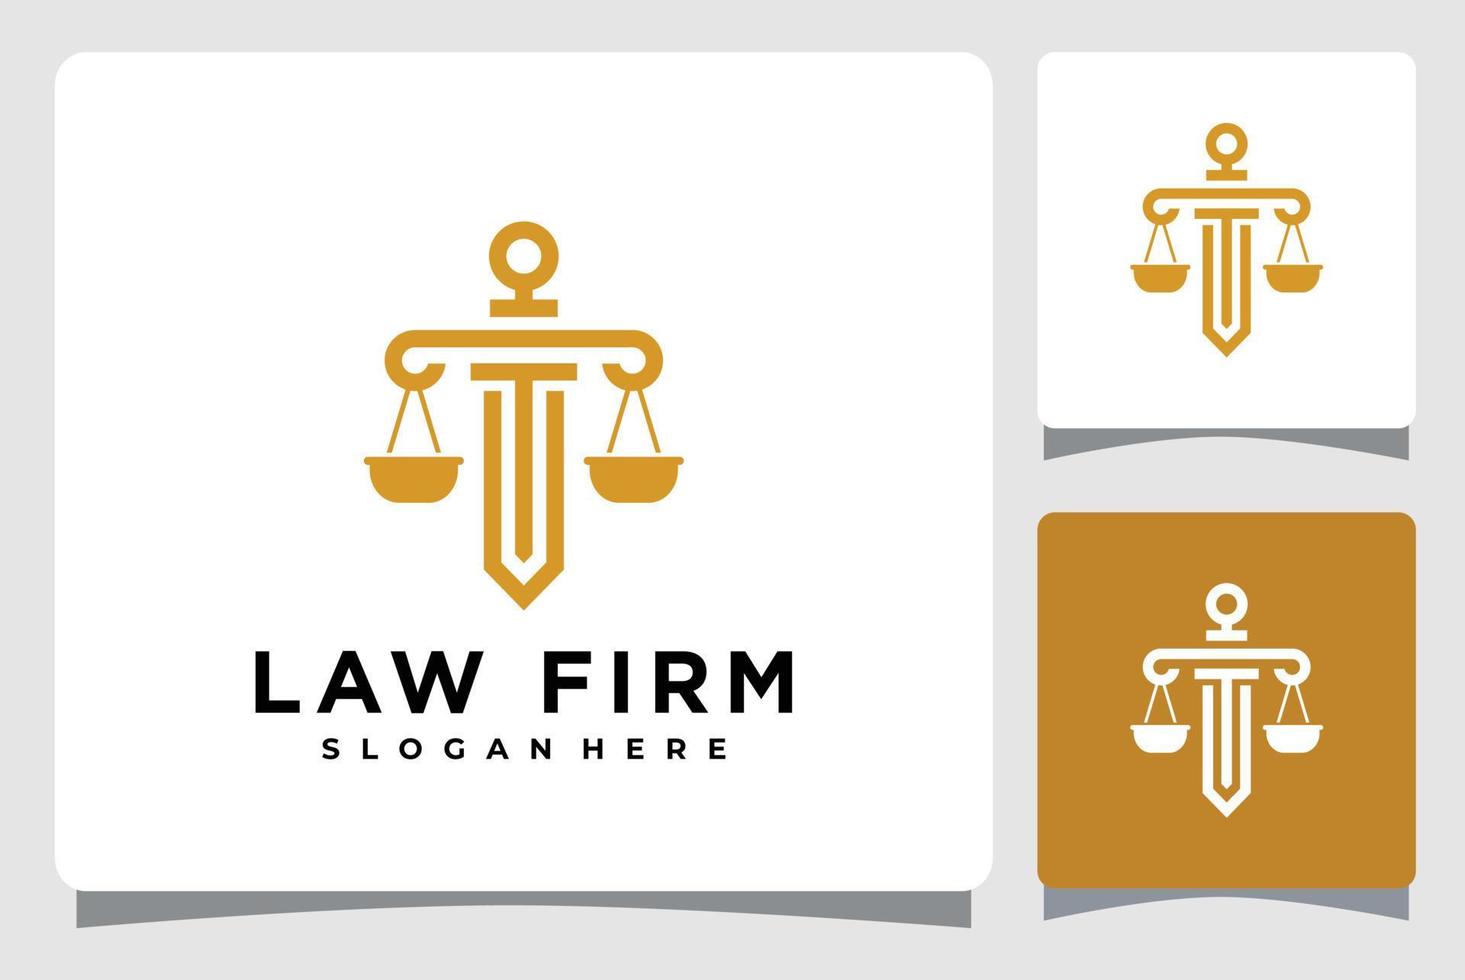 rättvisa lag fast logotyp mall design inspiration vektor